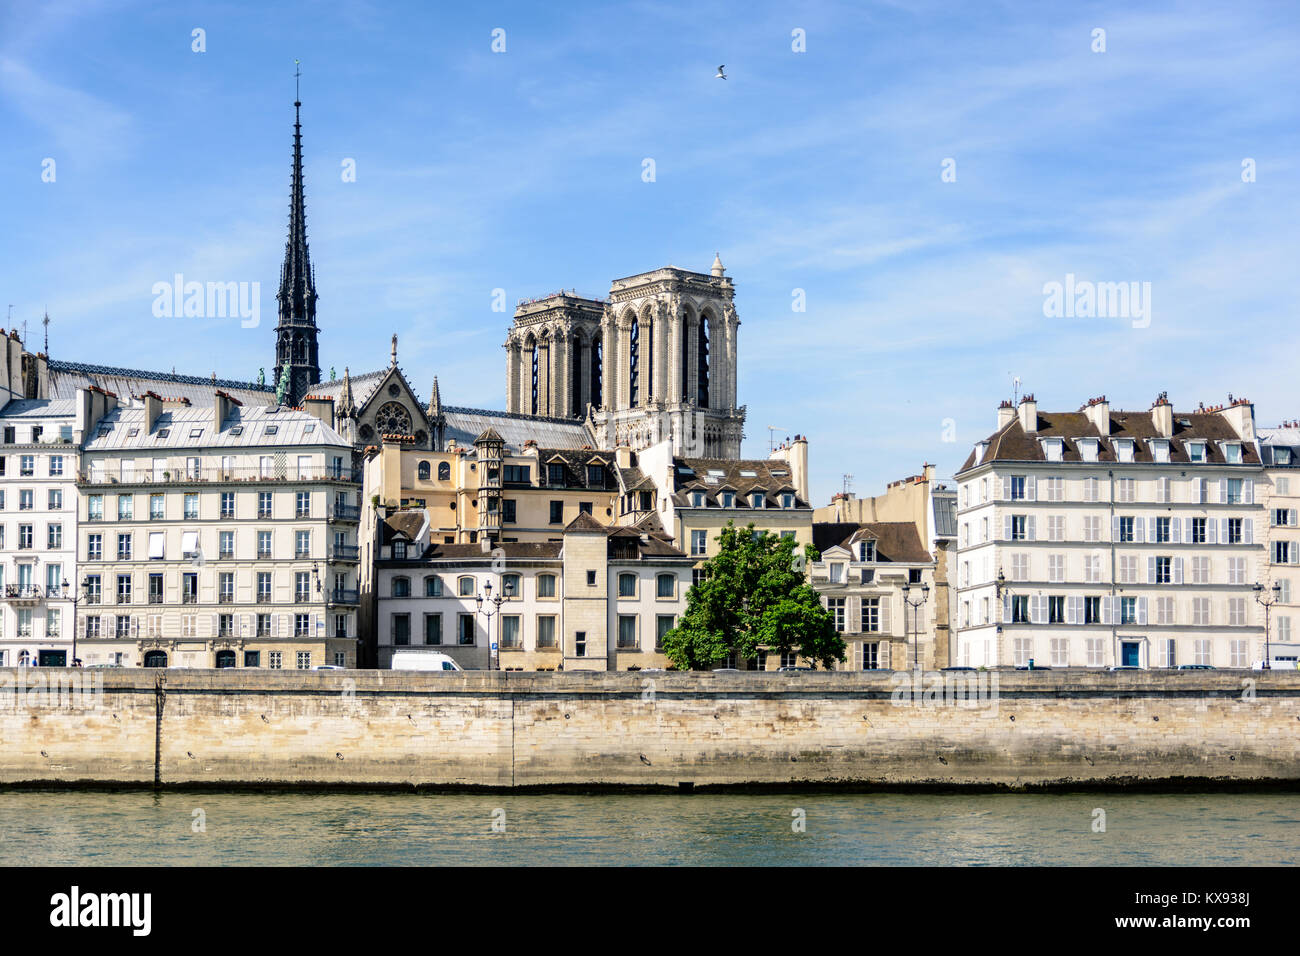 Vue de la cathédrale Notre-Dame de Paris sur l'Ile de la Cité avec des immeubles parisiens au premier plan. Banque D'Images